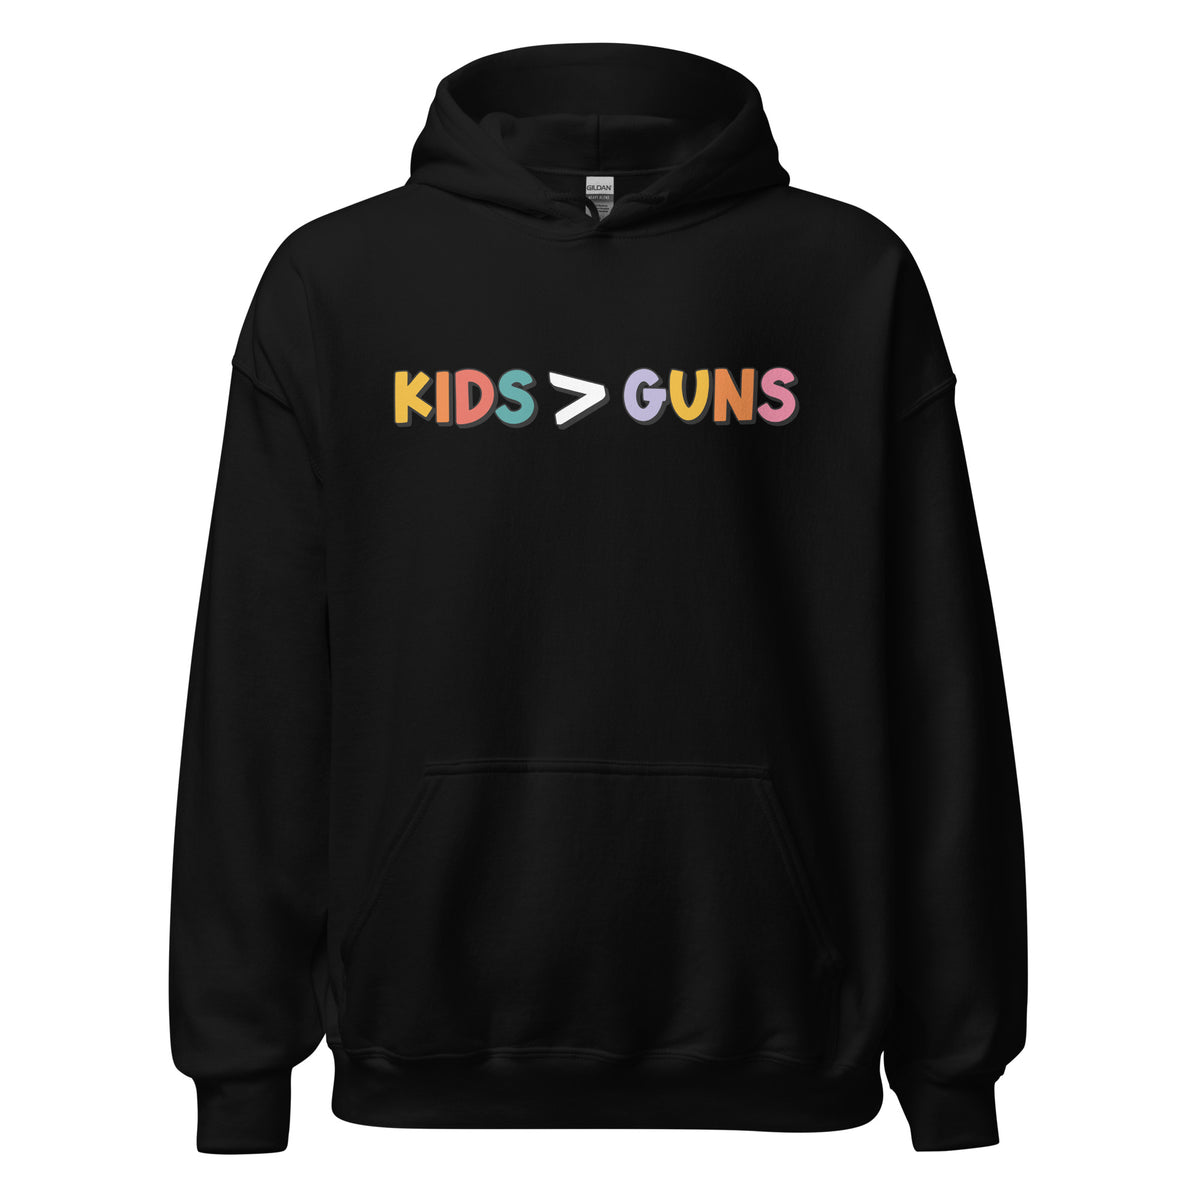 Kids > Guns Hoodie